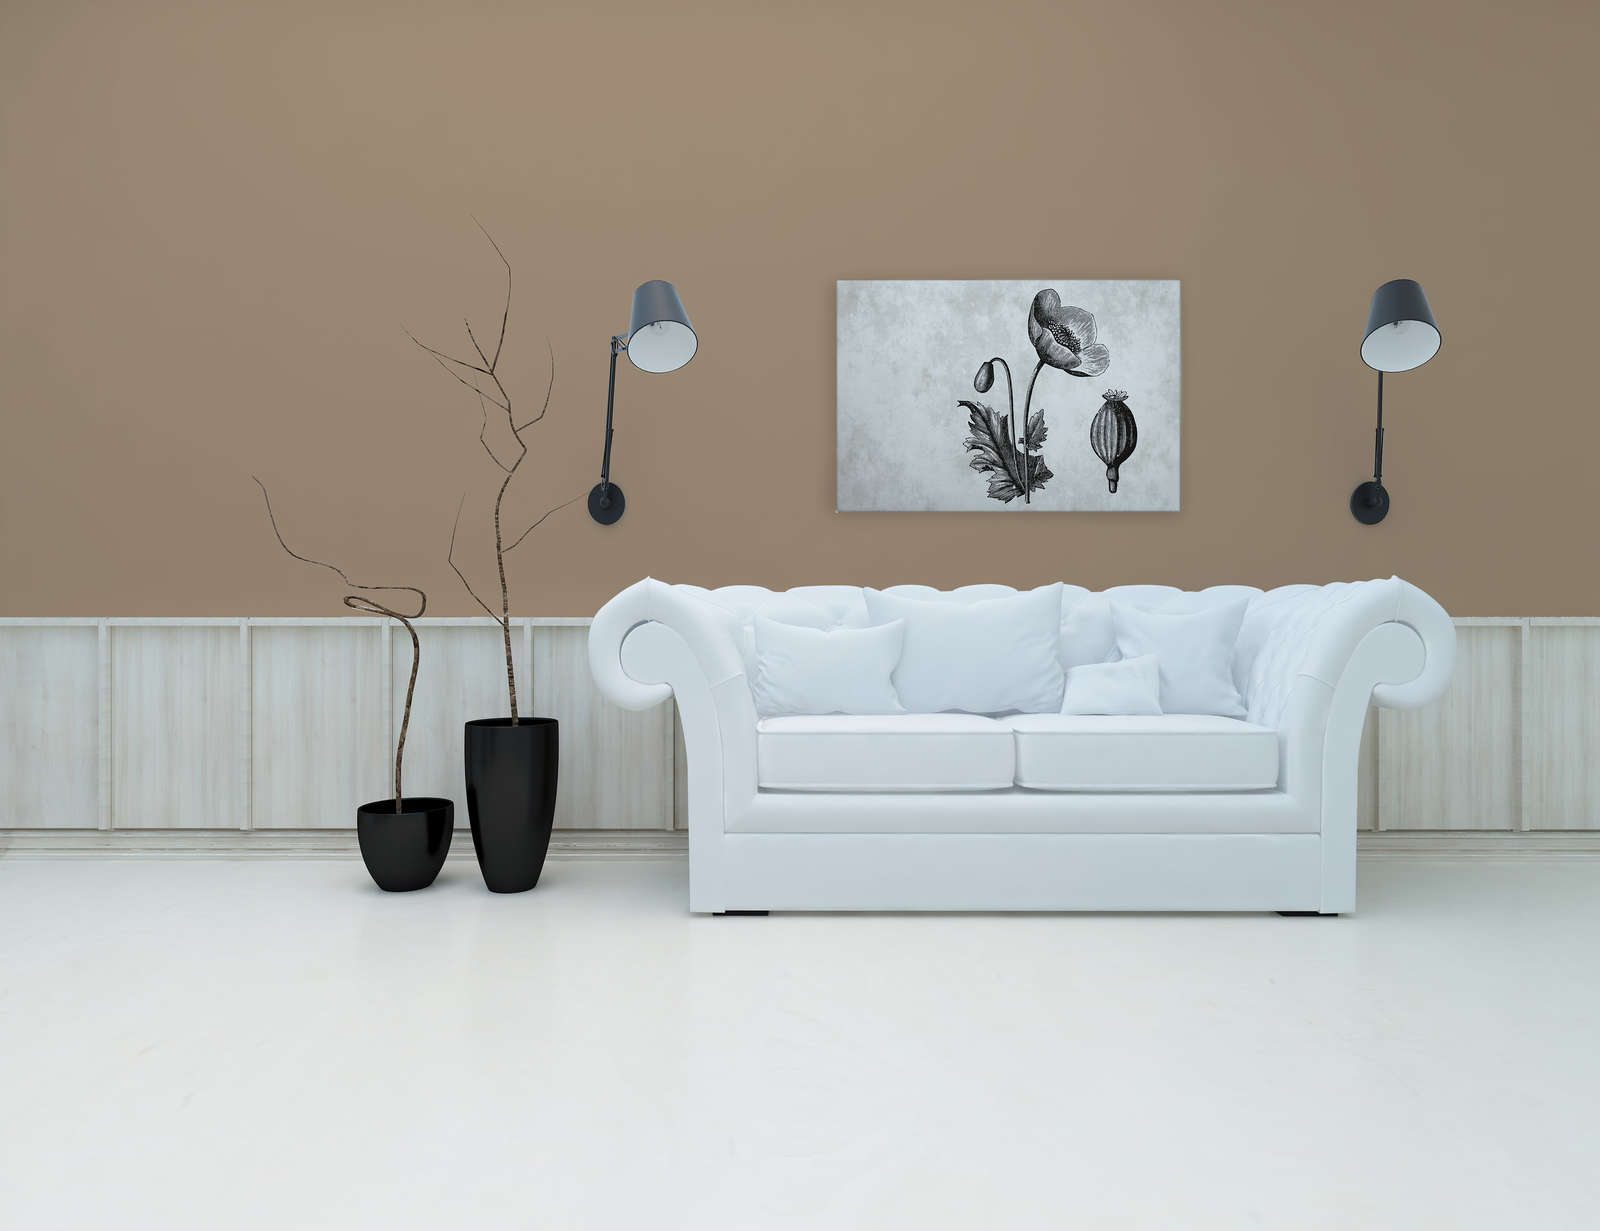             Toile noir et blanc Coquelicot Botanical Style - 0,90 m x 0,60 m
        